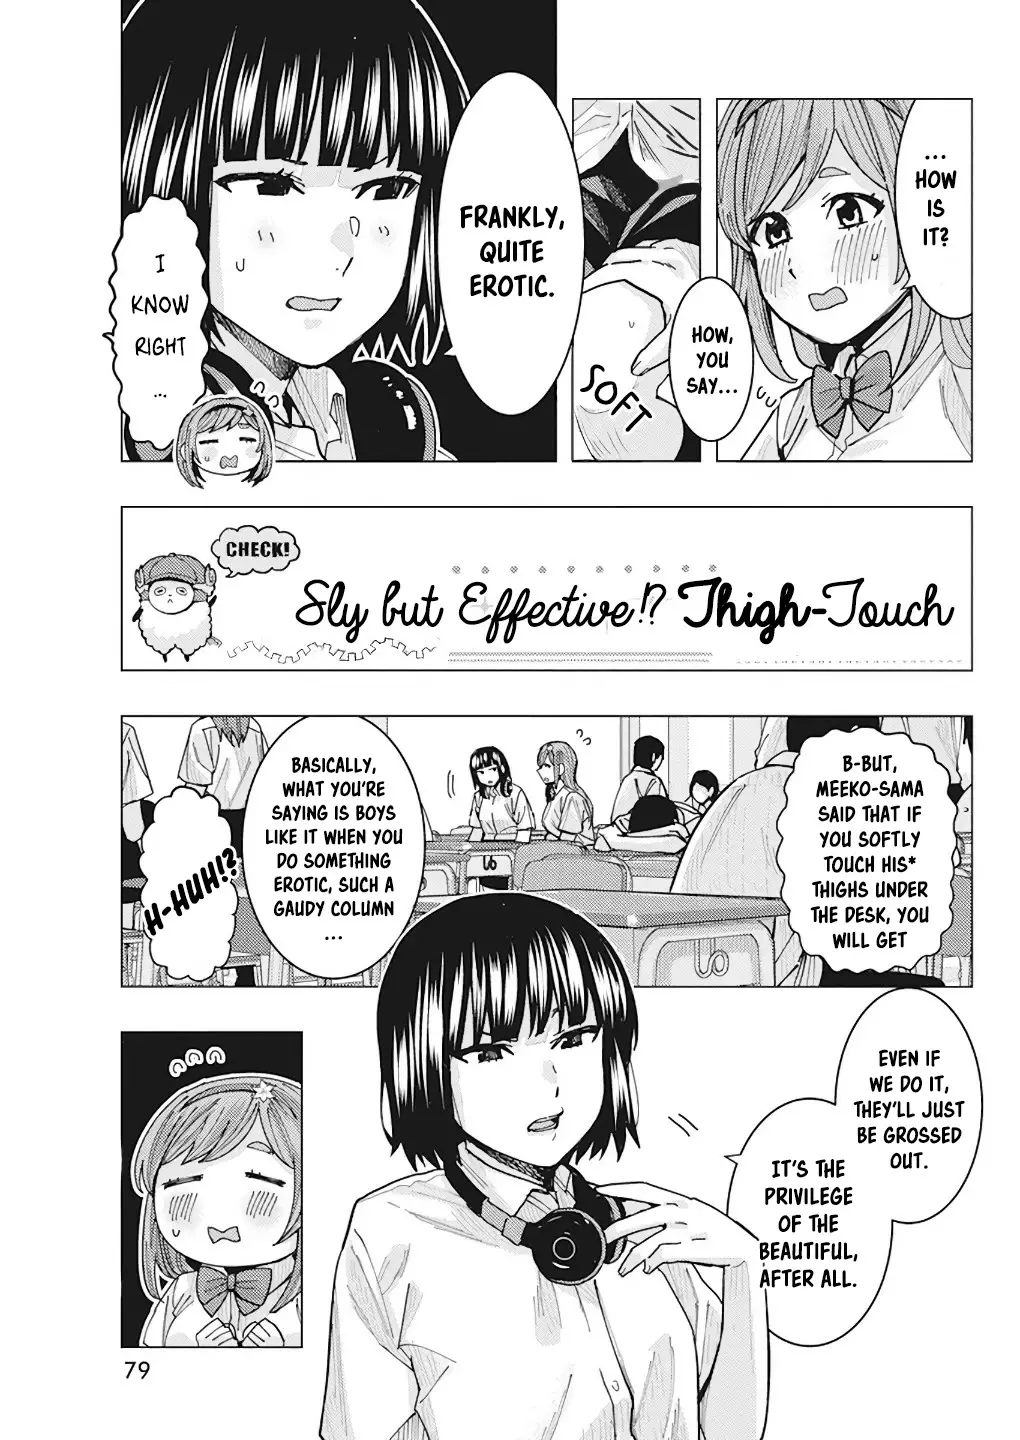 "nobukuni-San" Does She Like Me? - 13 page 5-0fbea242